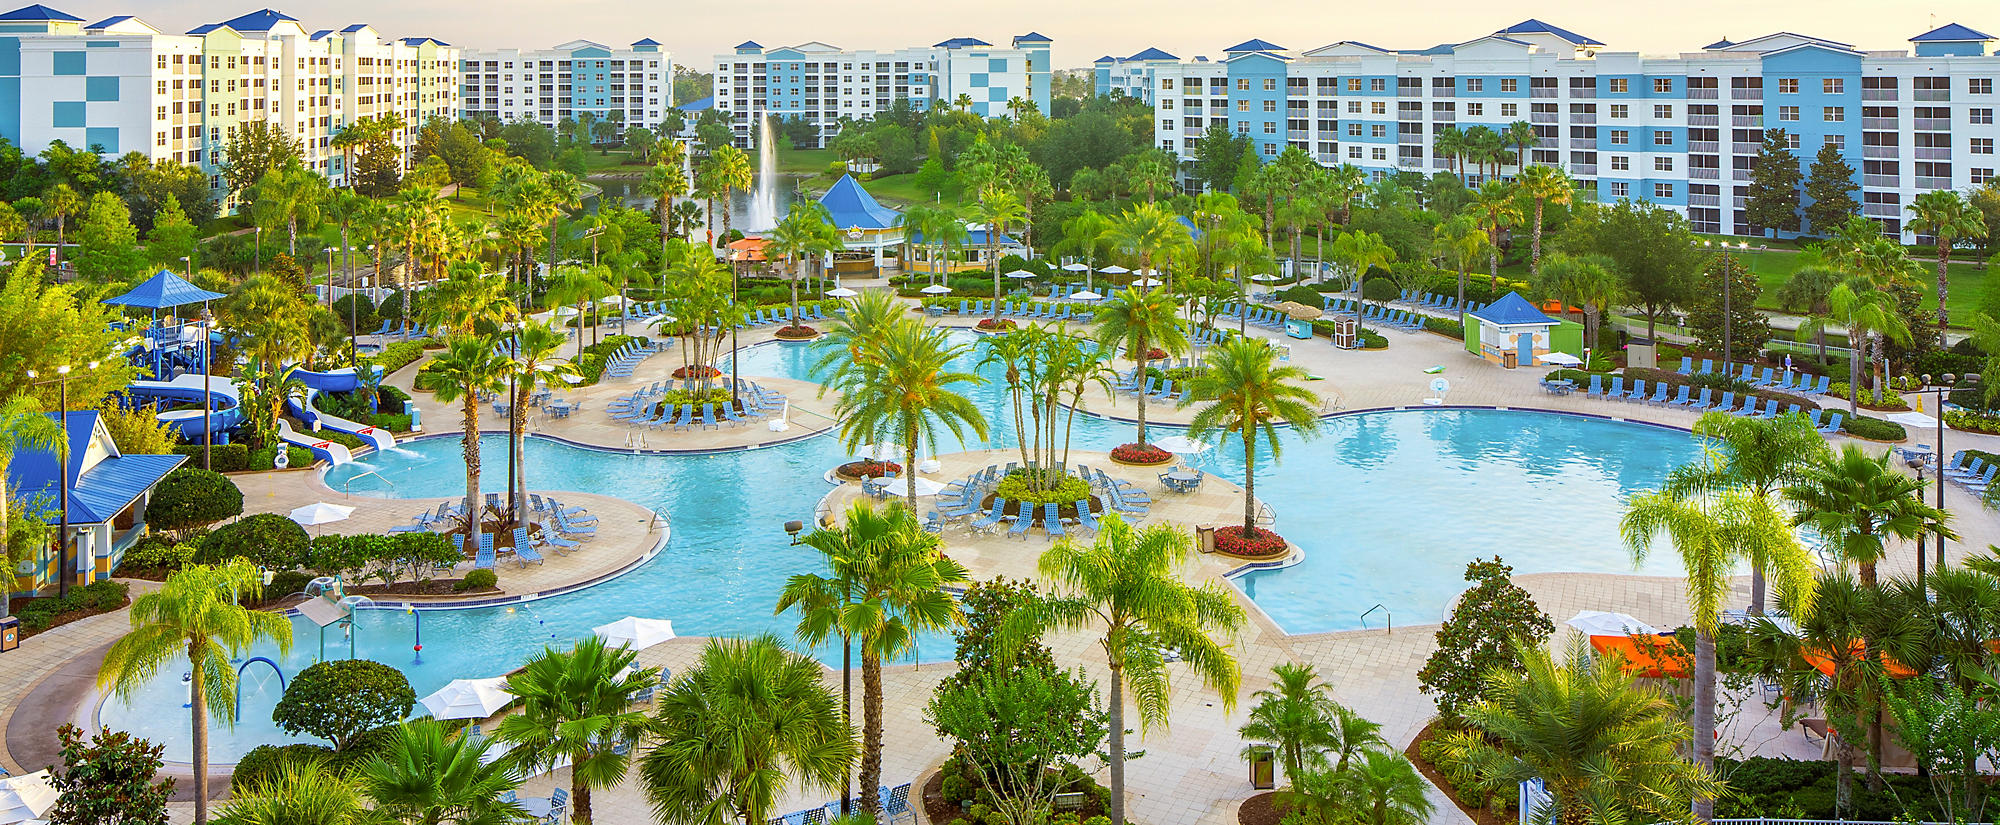 The Fountains - Orlando, Florida